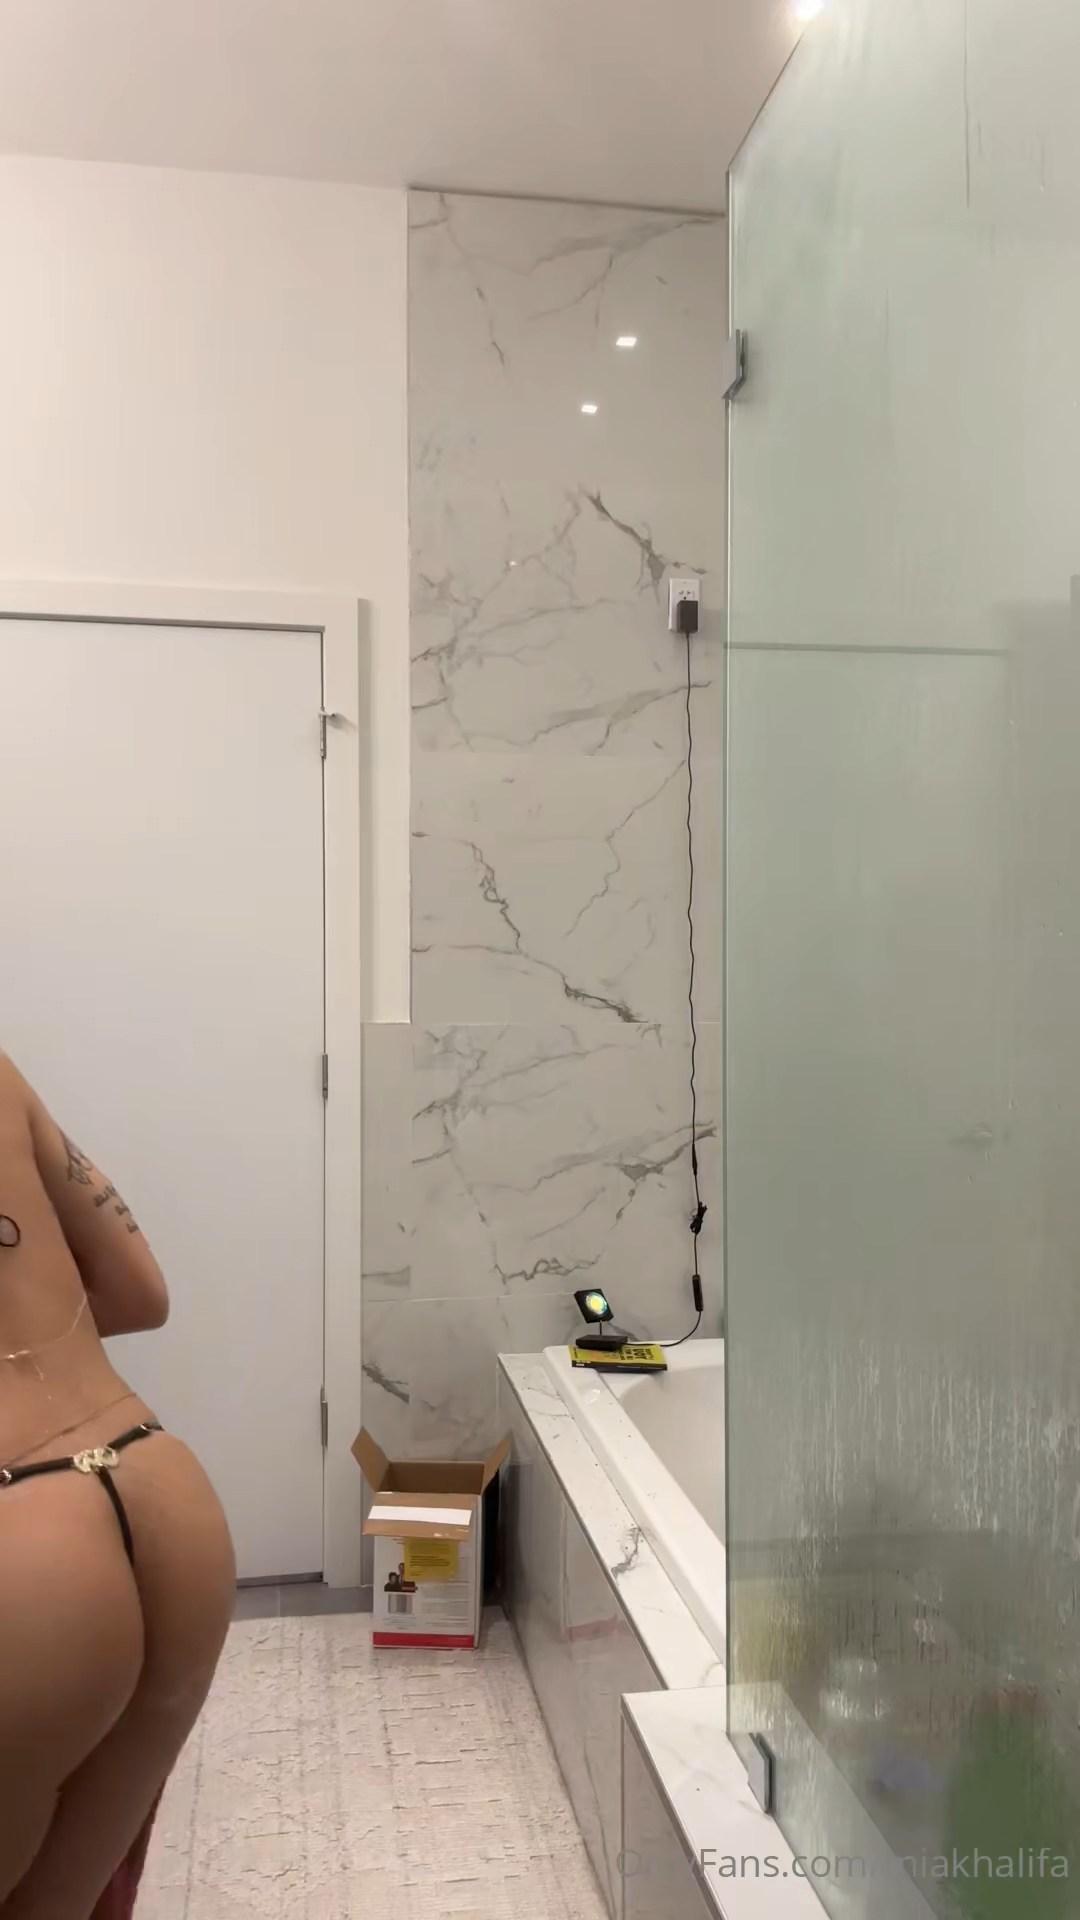 mia khalifa nude shower towel onlyfans video leaked eeftjl